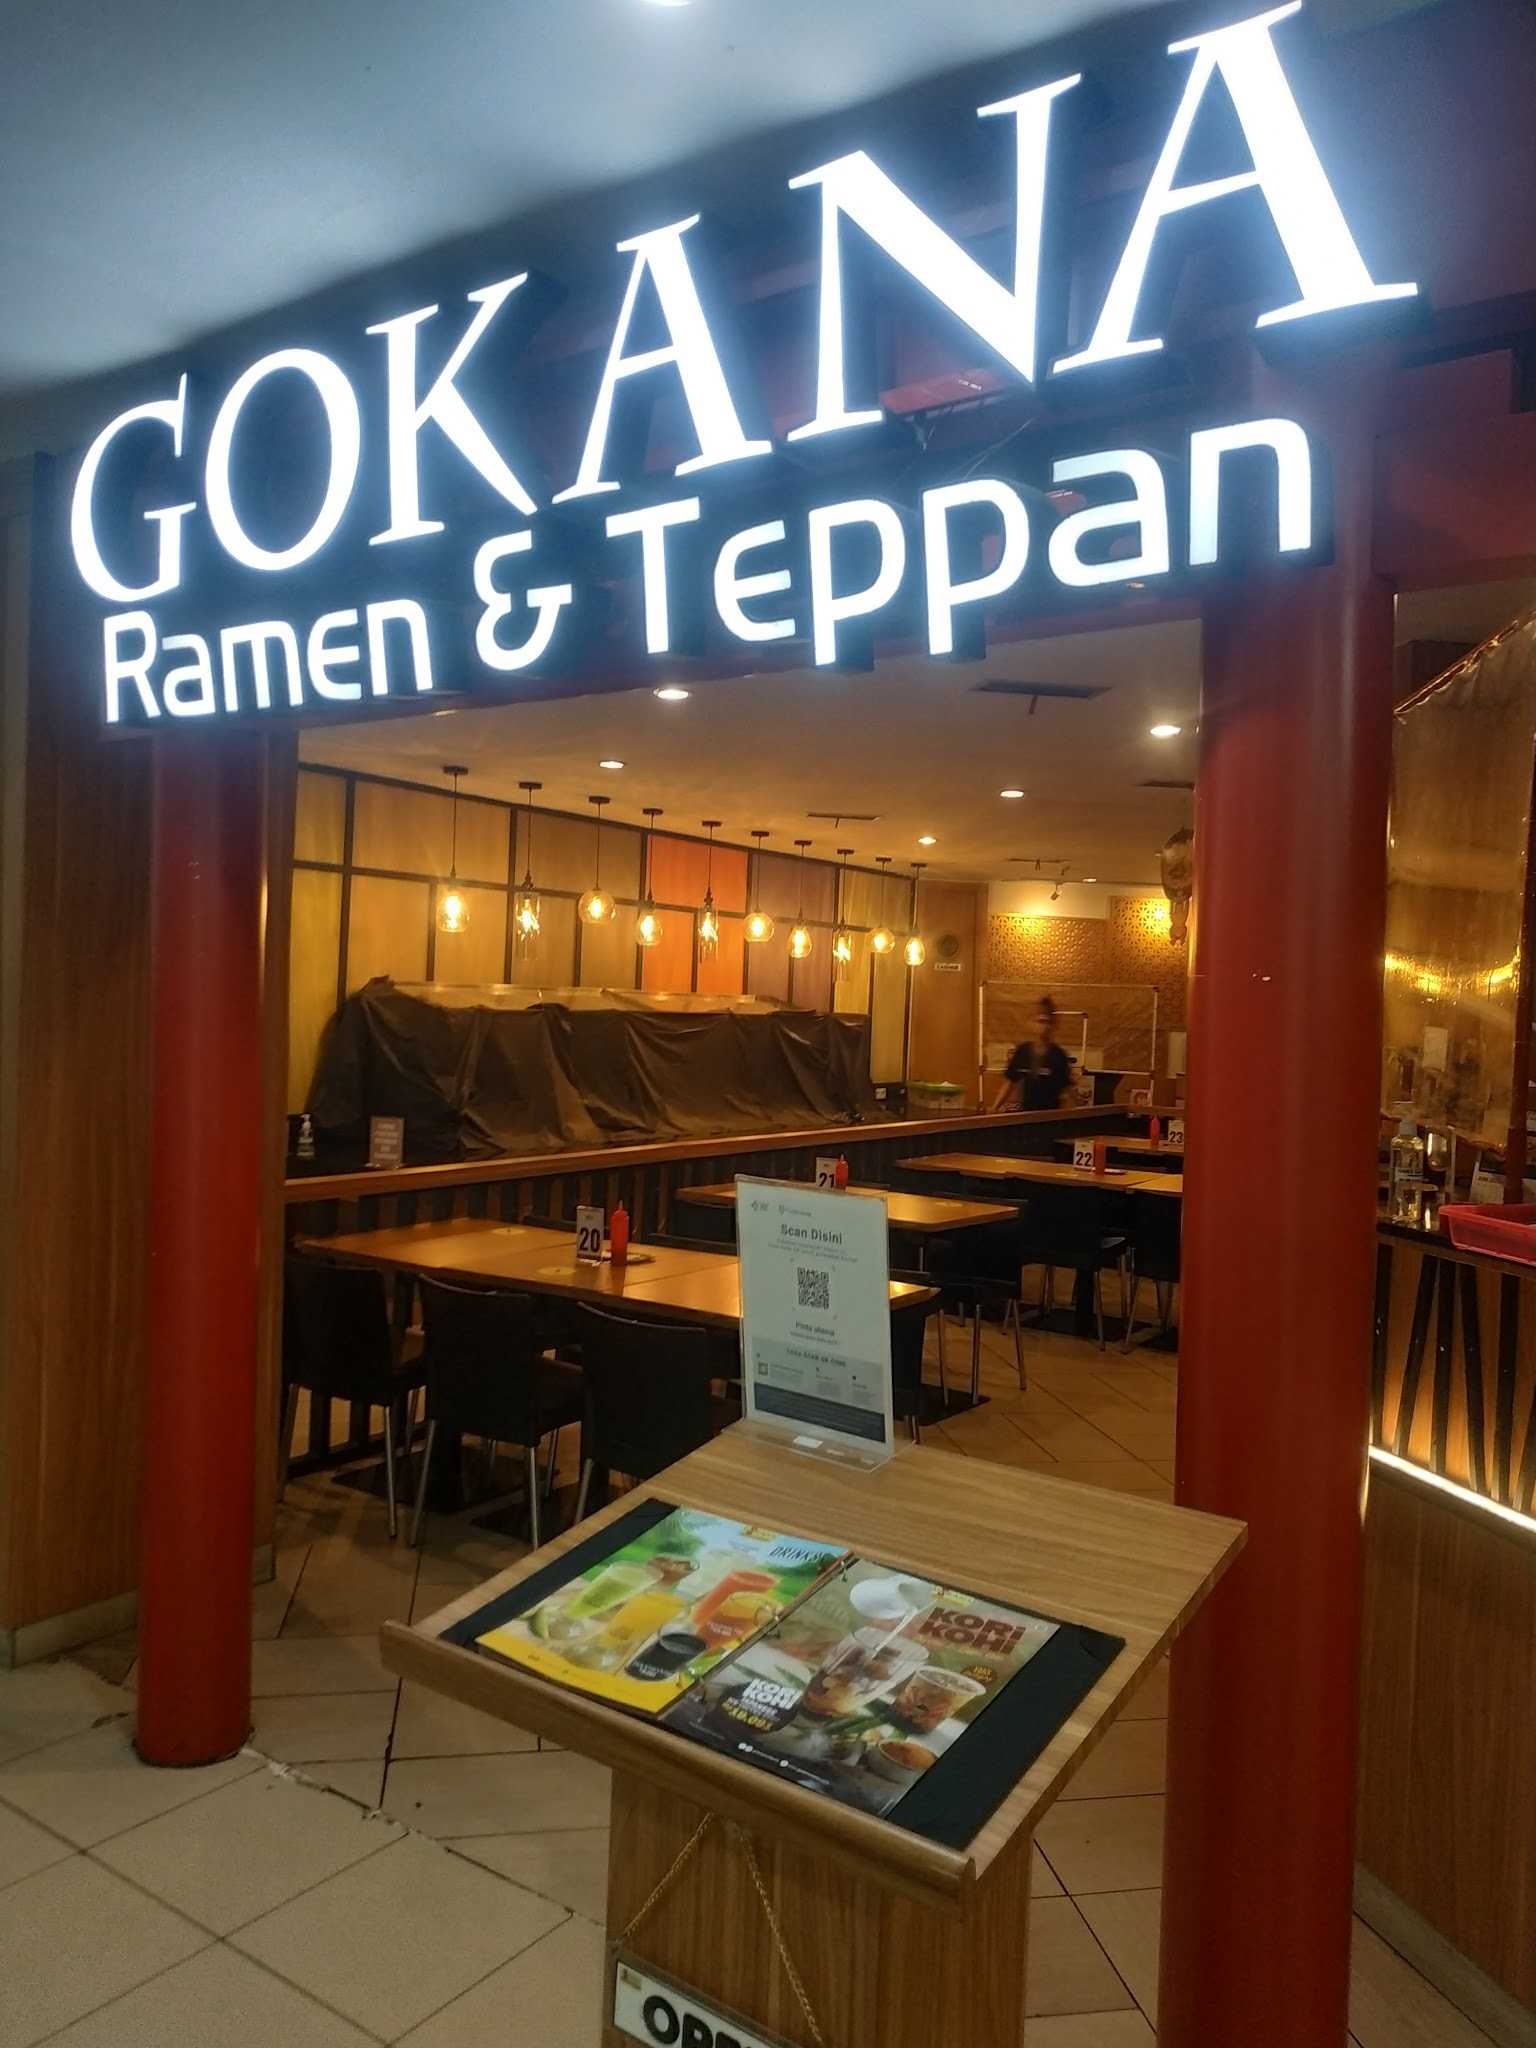 Gokana Ramen & Teppan - Plaza Surabaya (Delta) 1